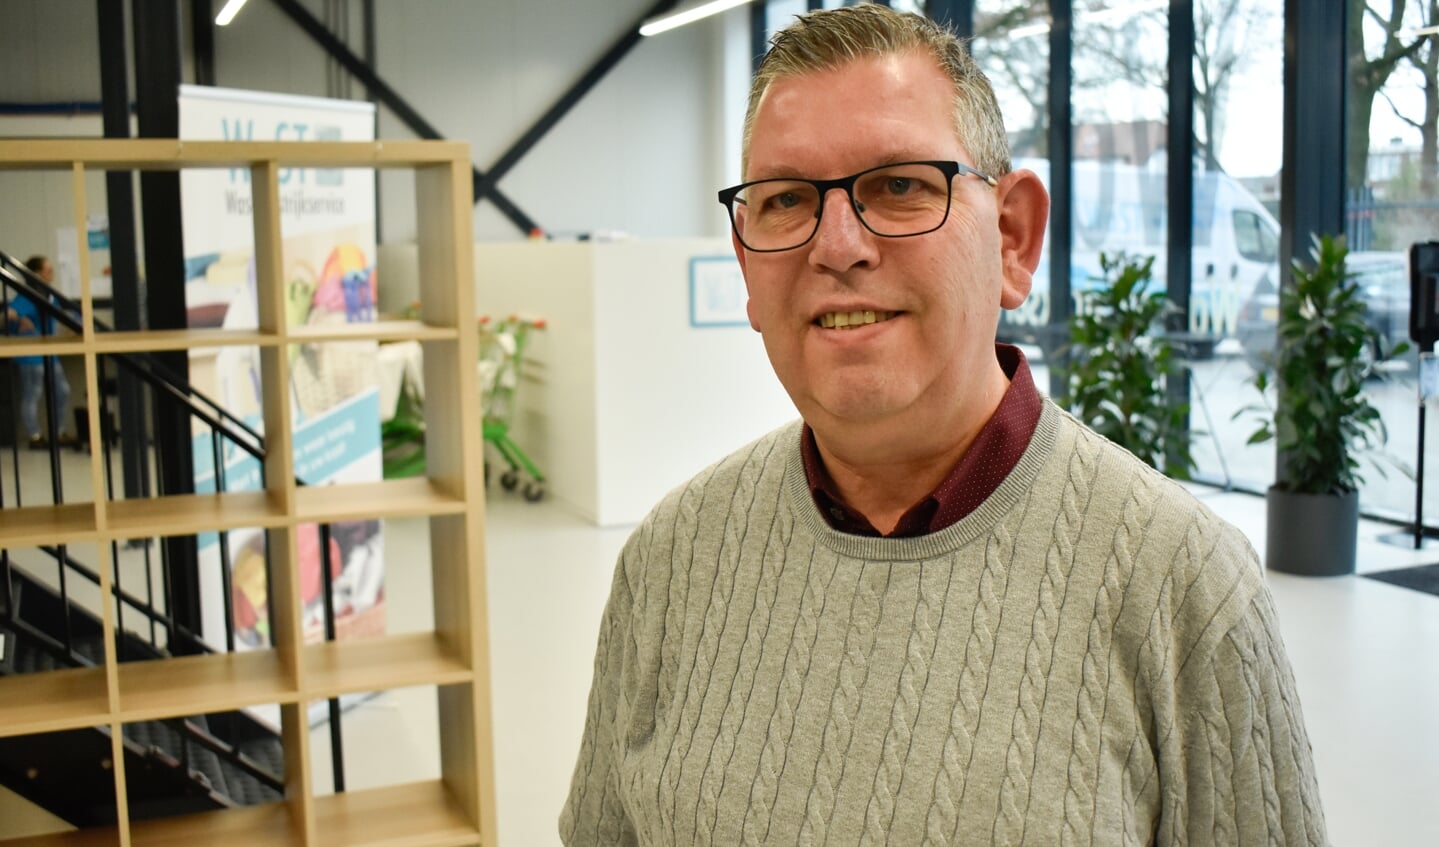 Vestigingsmanager Huub Jansen hoopt volgende jaar zeker 150 waszakken per week te kunnen verwerken.